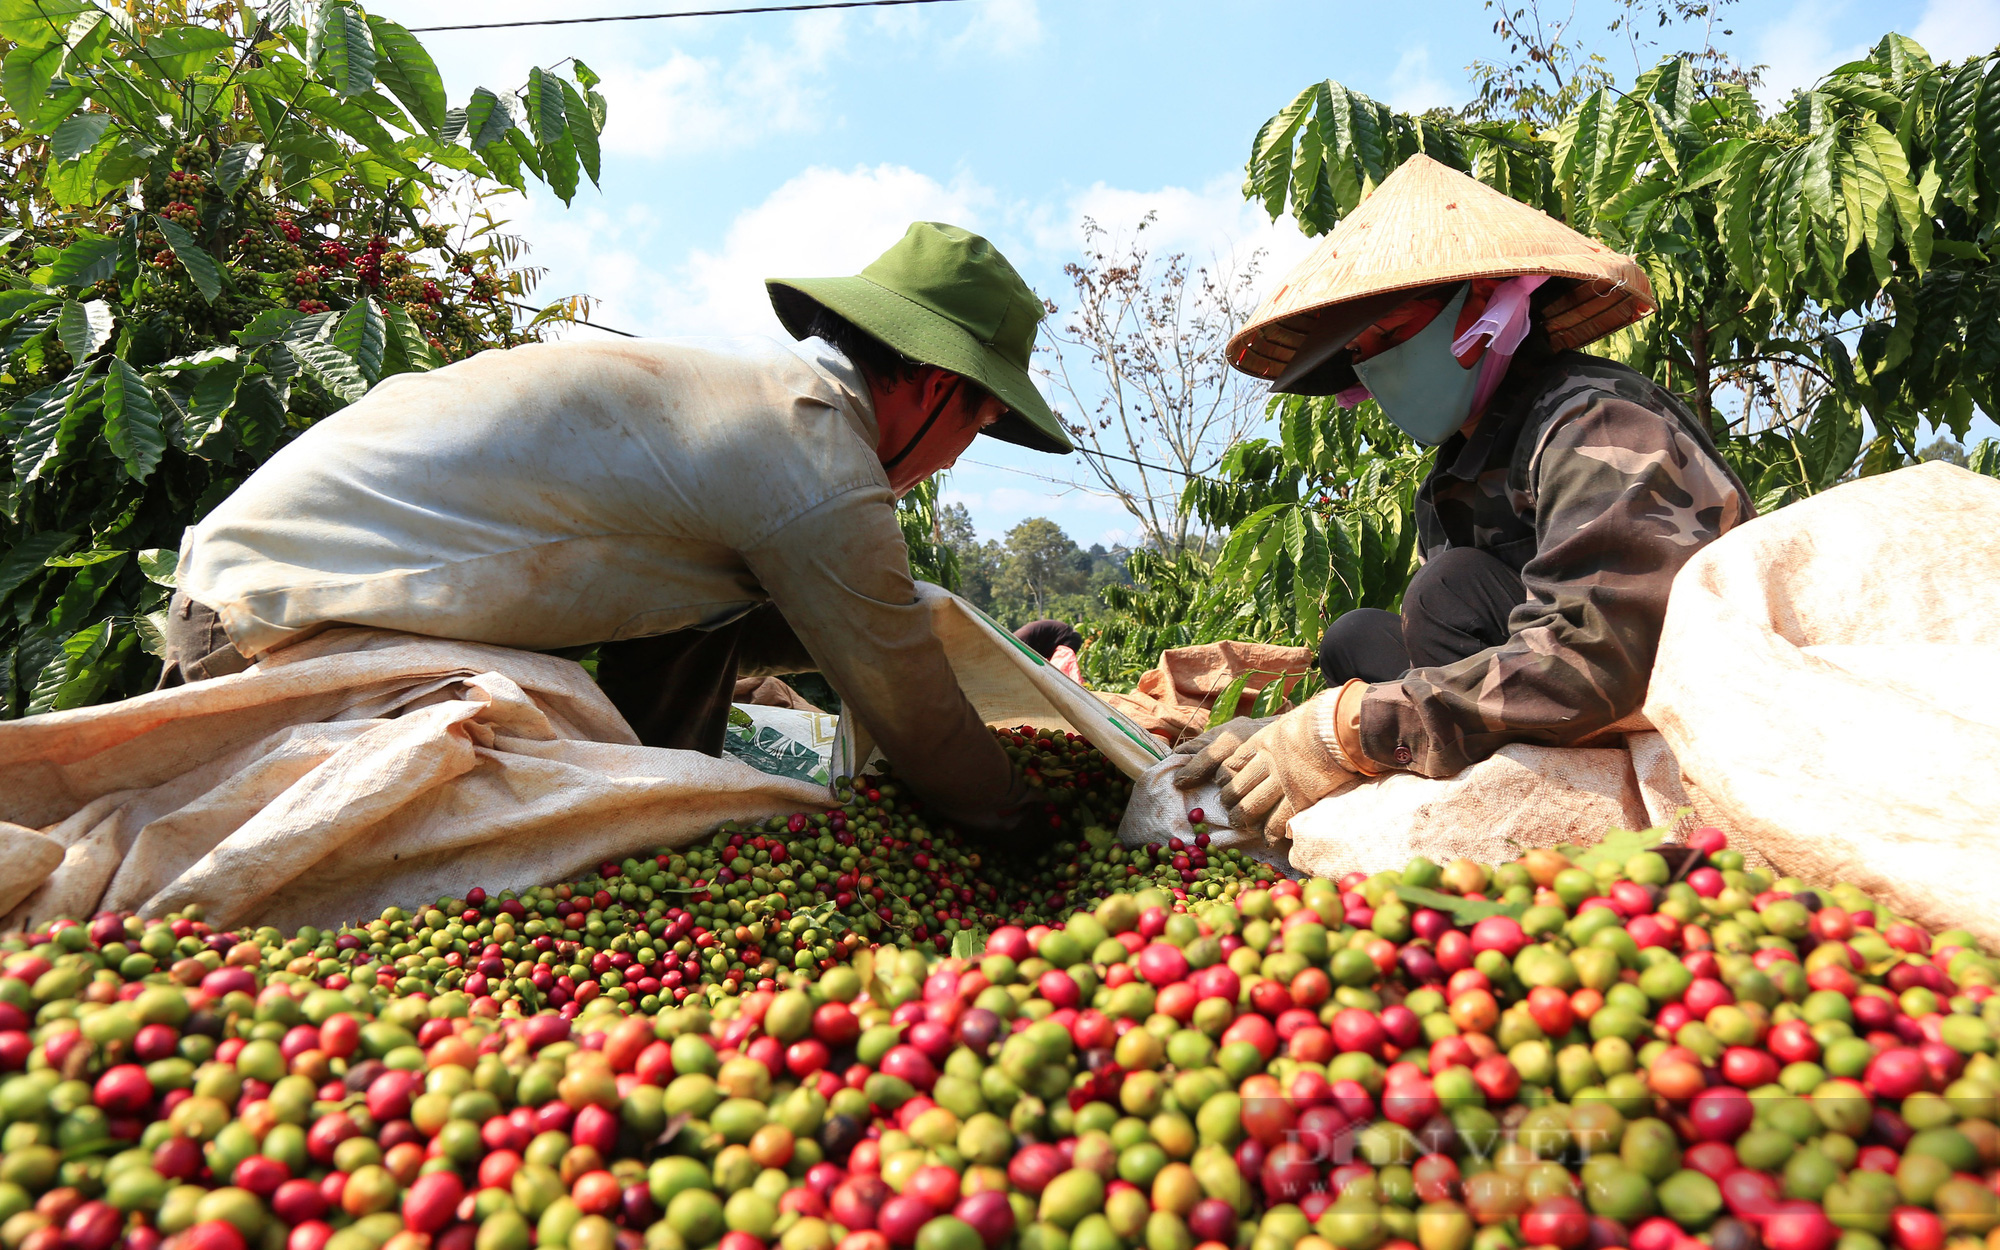 Mỹ mạnh tay chi hơn 5,72 tỷ USD mua loại hạt này, giá cà phê Việt Nam sẽ tăng?